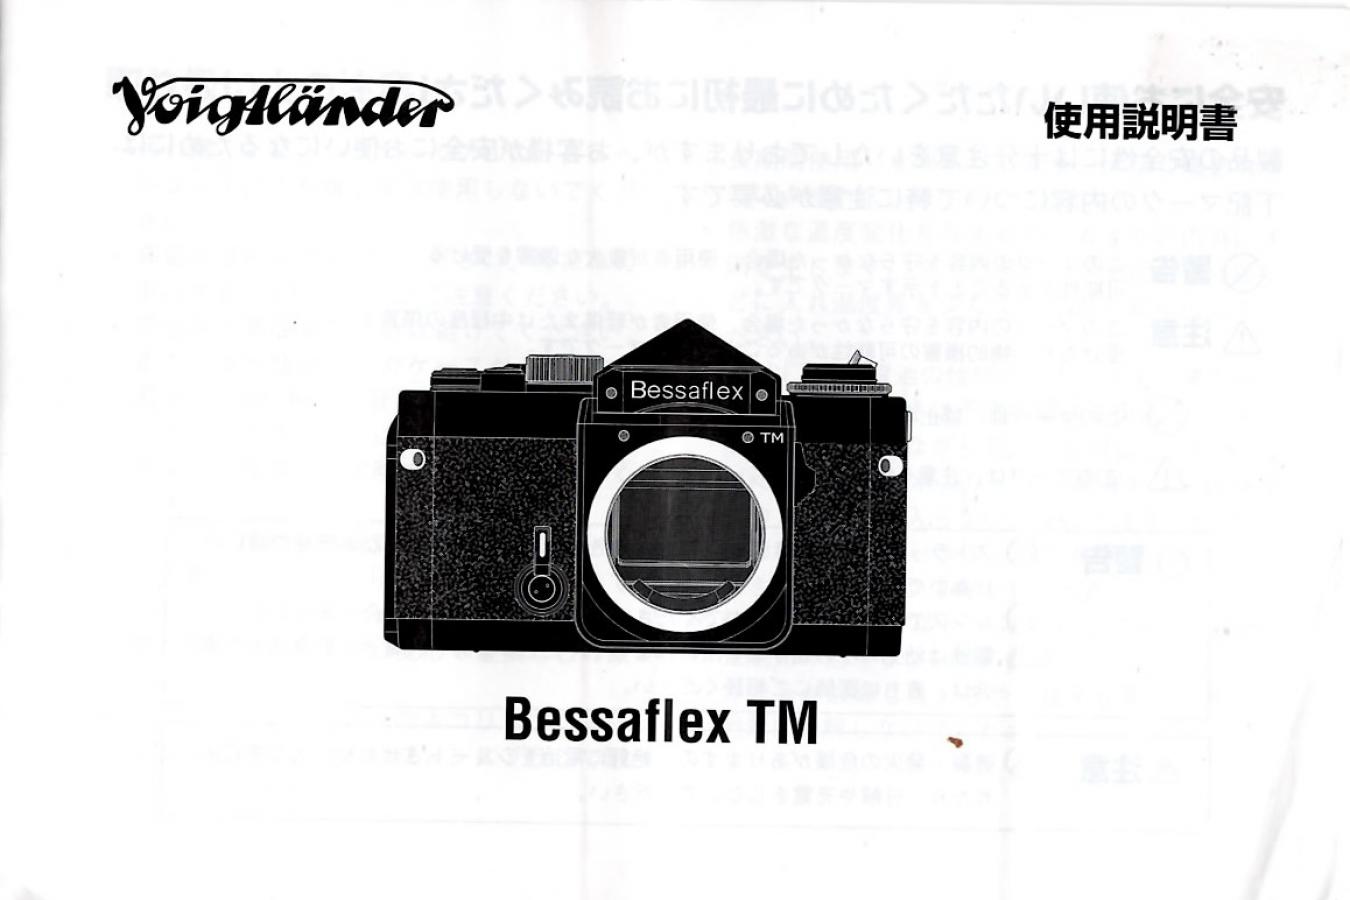 【絶版取説】Voigtlander Bessaflex TM 取説